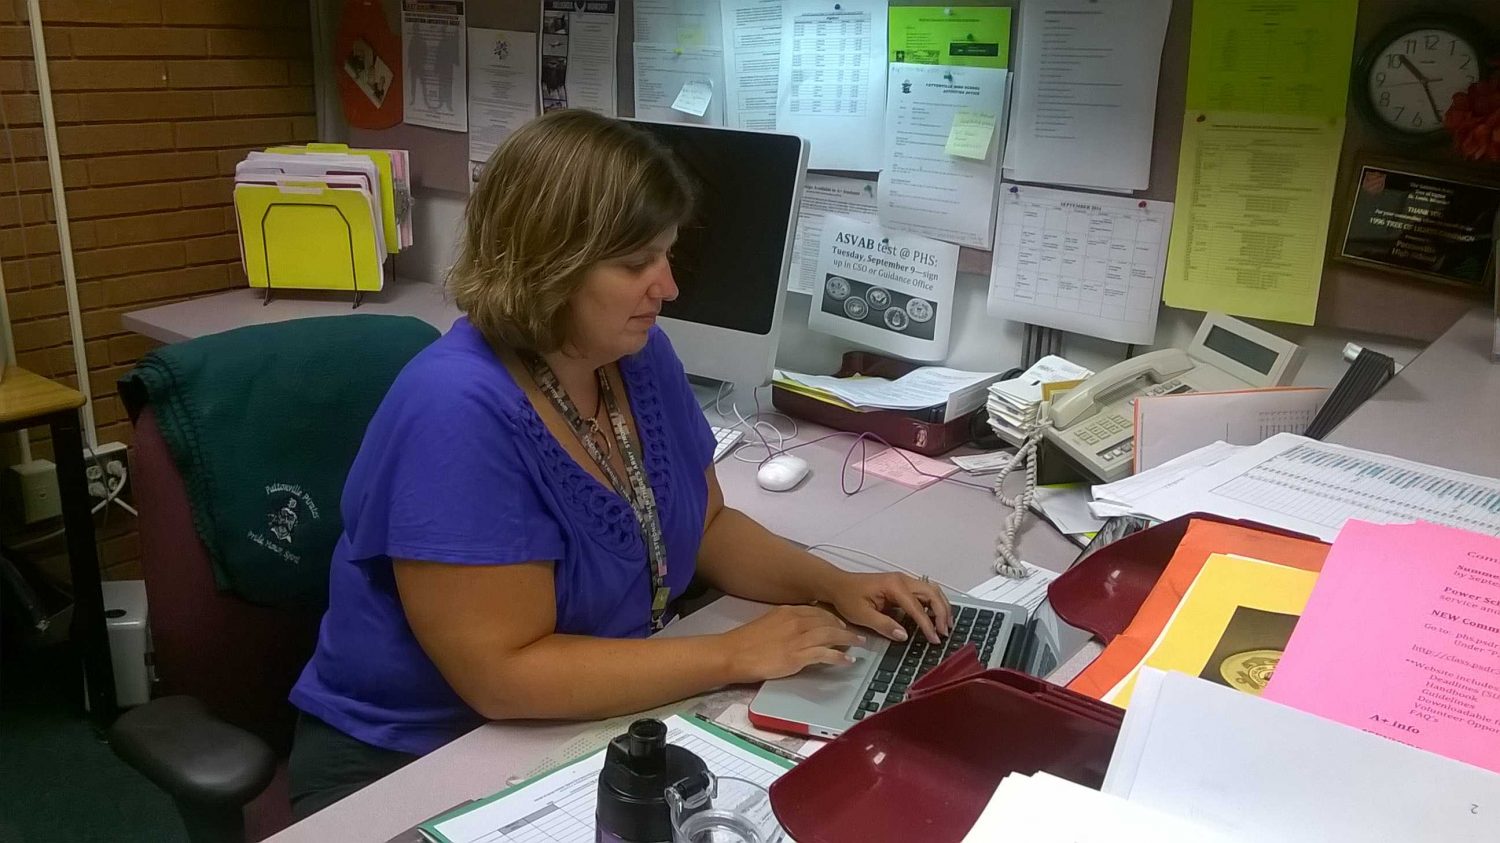 Krohn completing work at her desk.